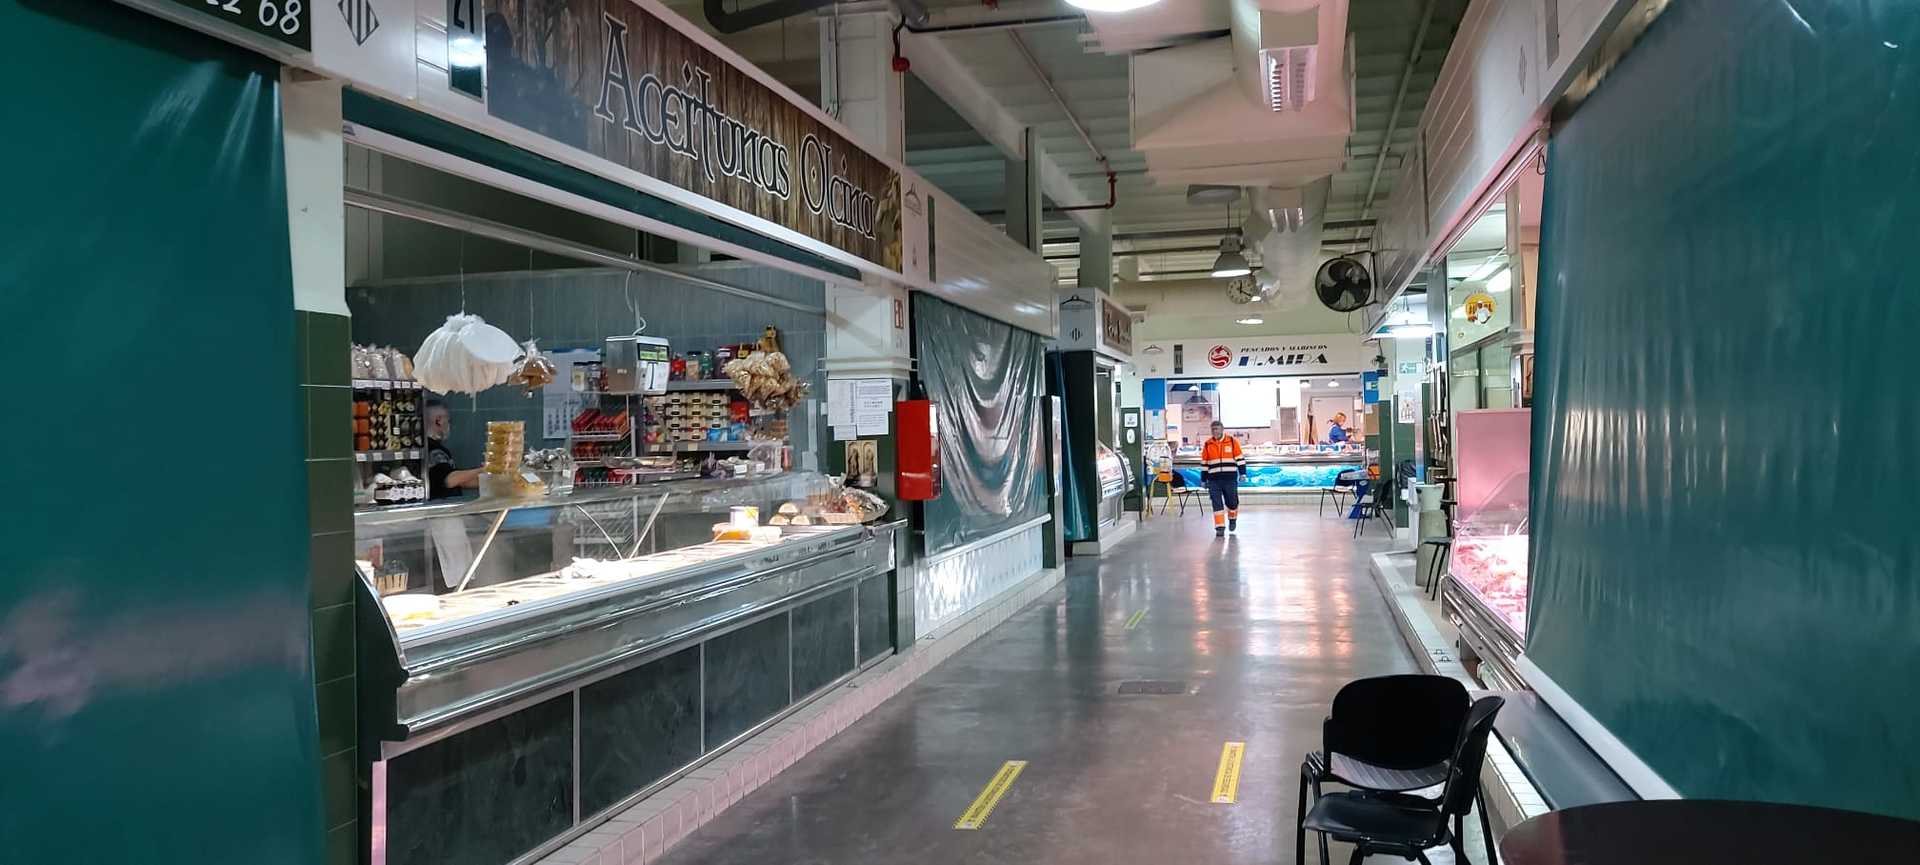 Mercado de San Mateo in Alcoy